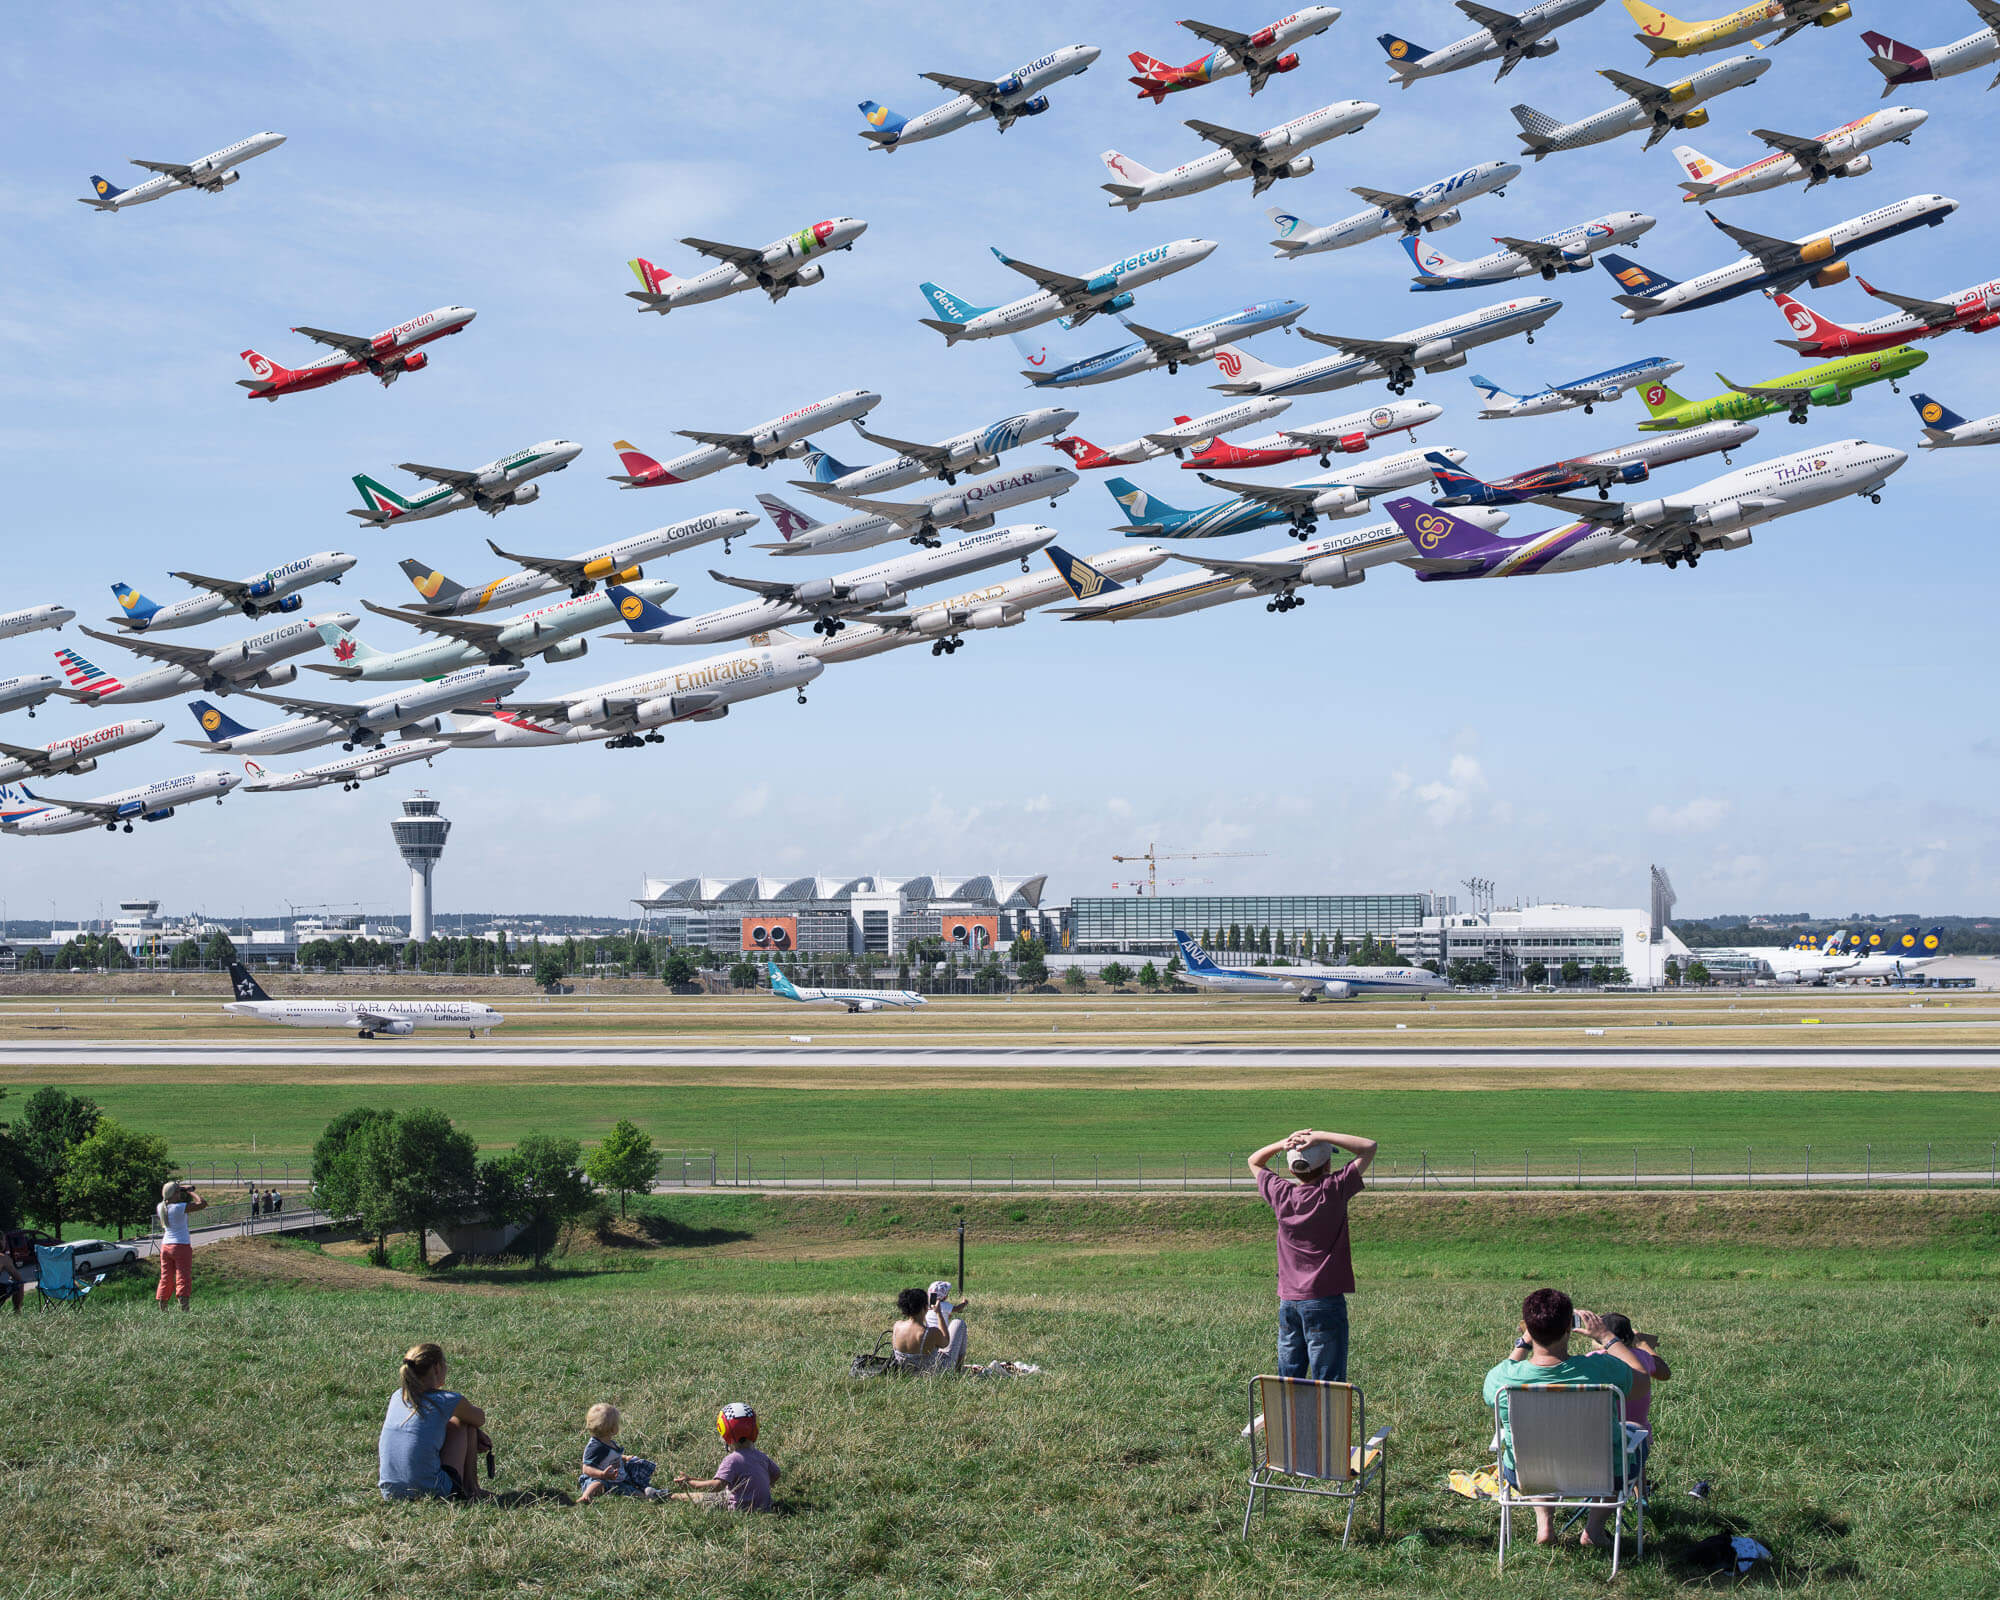 Пригород самолет. Майк Келли фотограф. Много самолетов. Птицы на аэродроме. Много самолетов в небе.